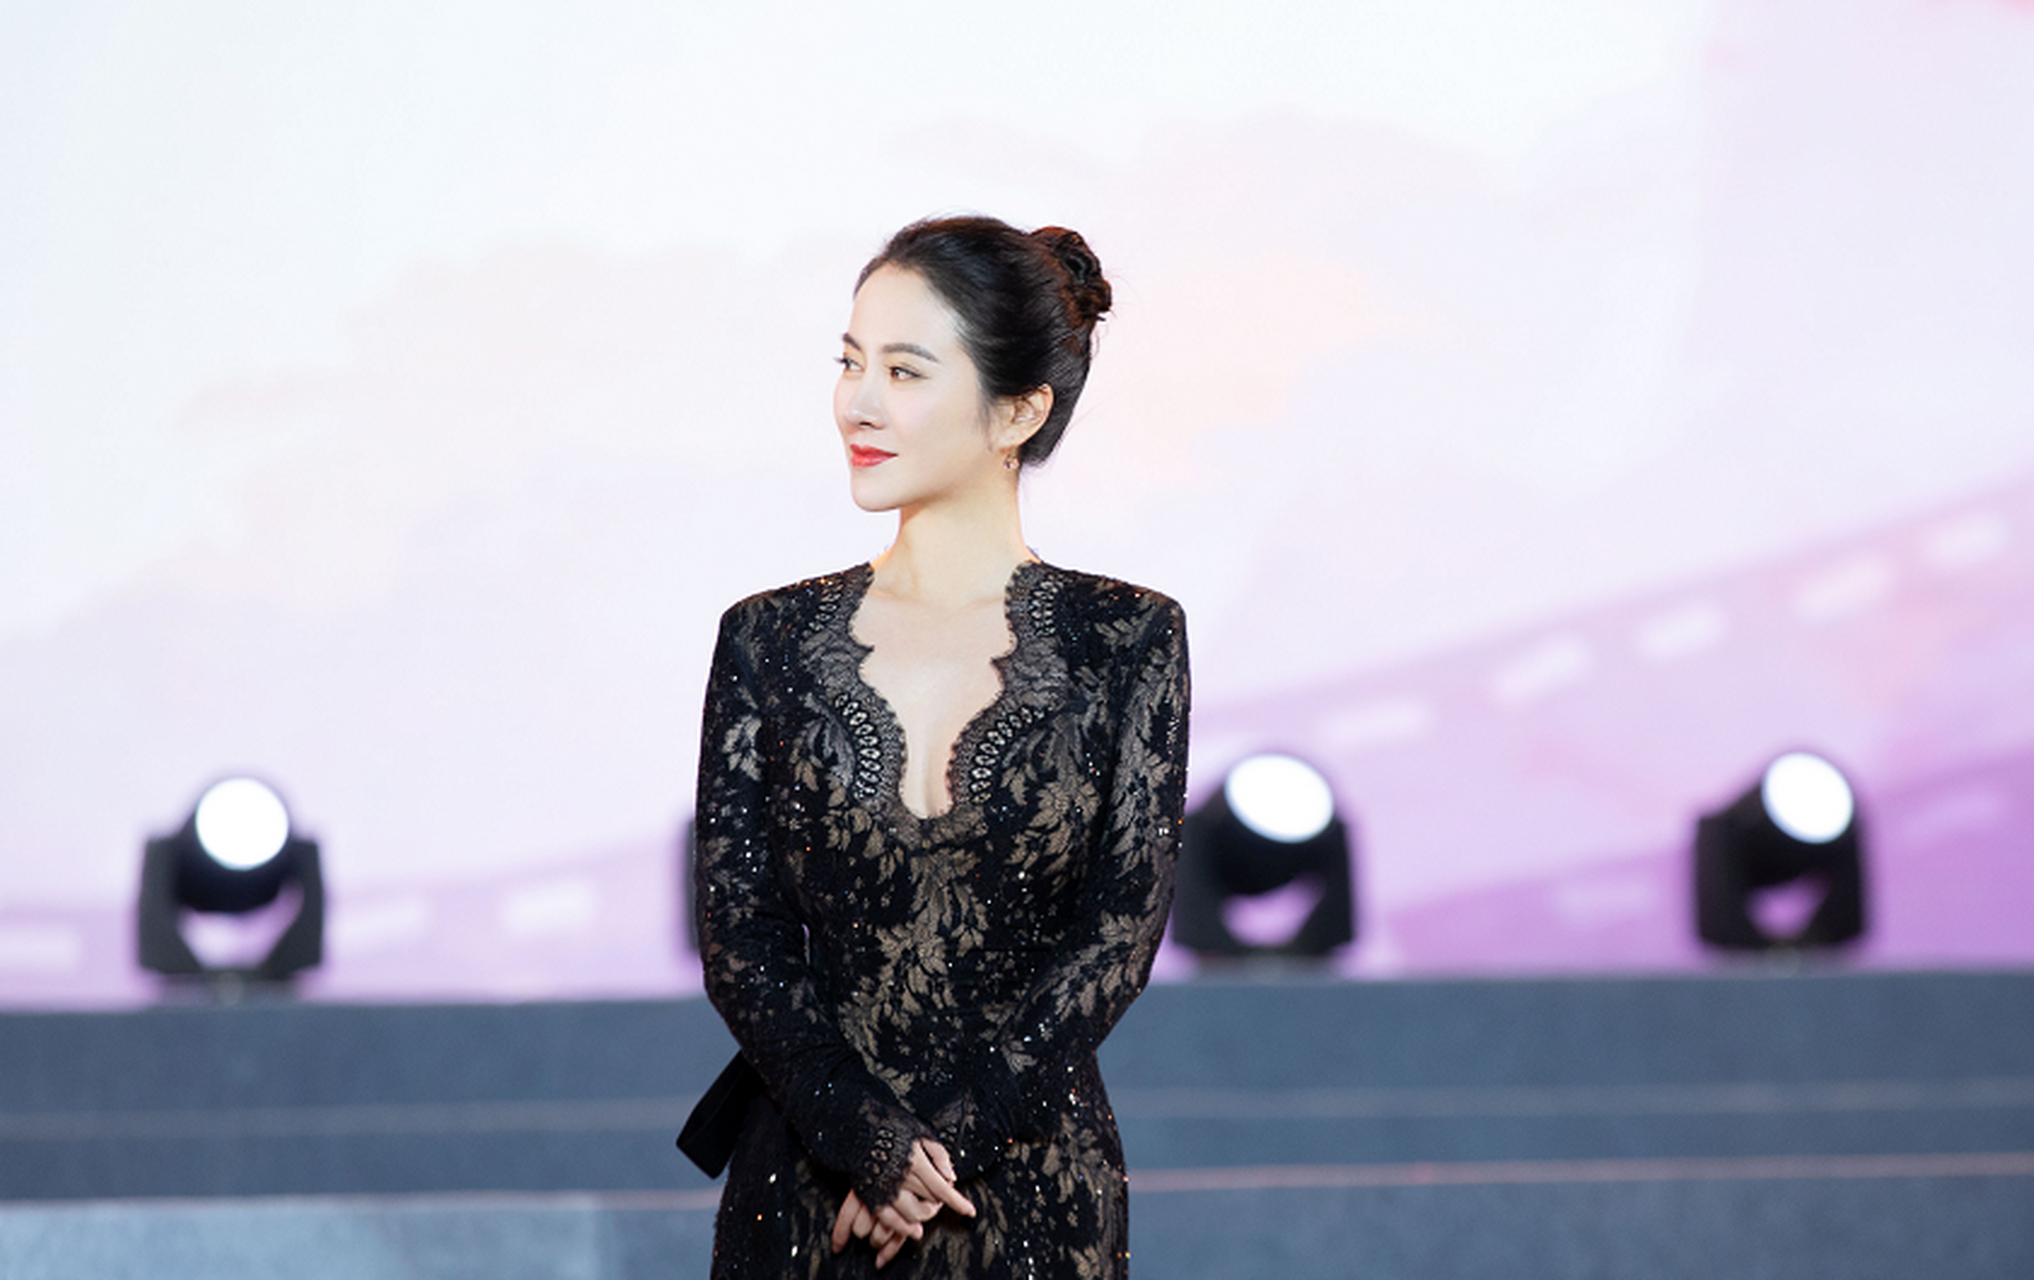 叶璇以大胆创新的形象穿着黑丝裙展现时尚魅力,这是她个人风格的深刻